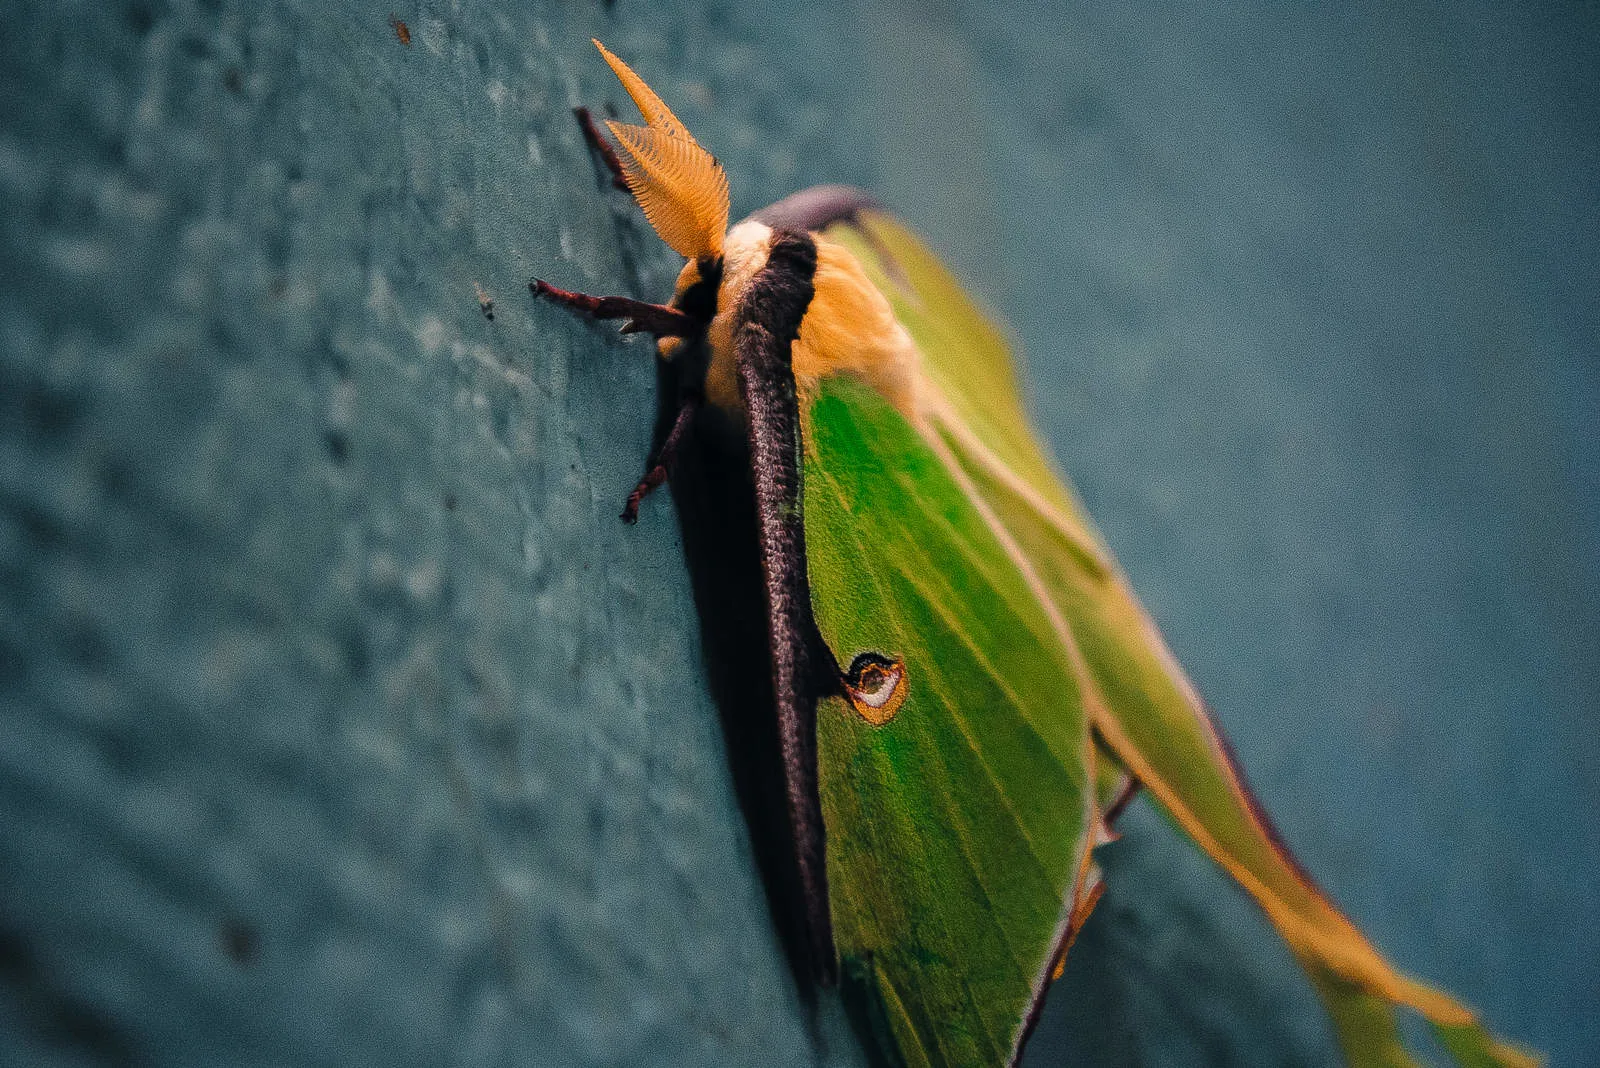 Luna Moth on wall